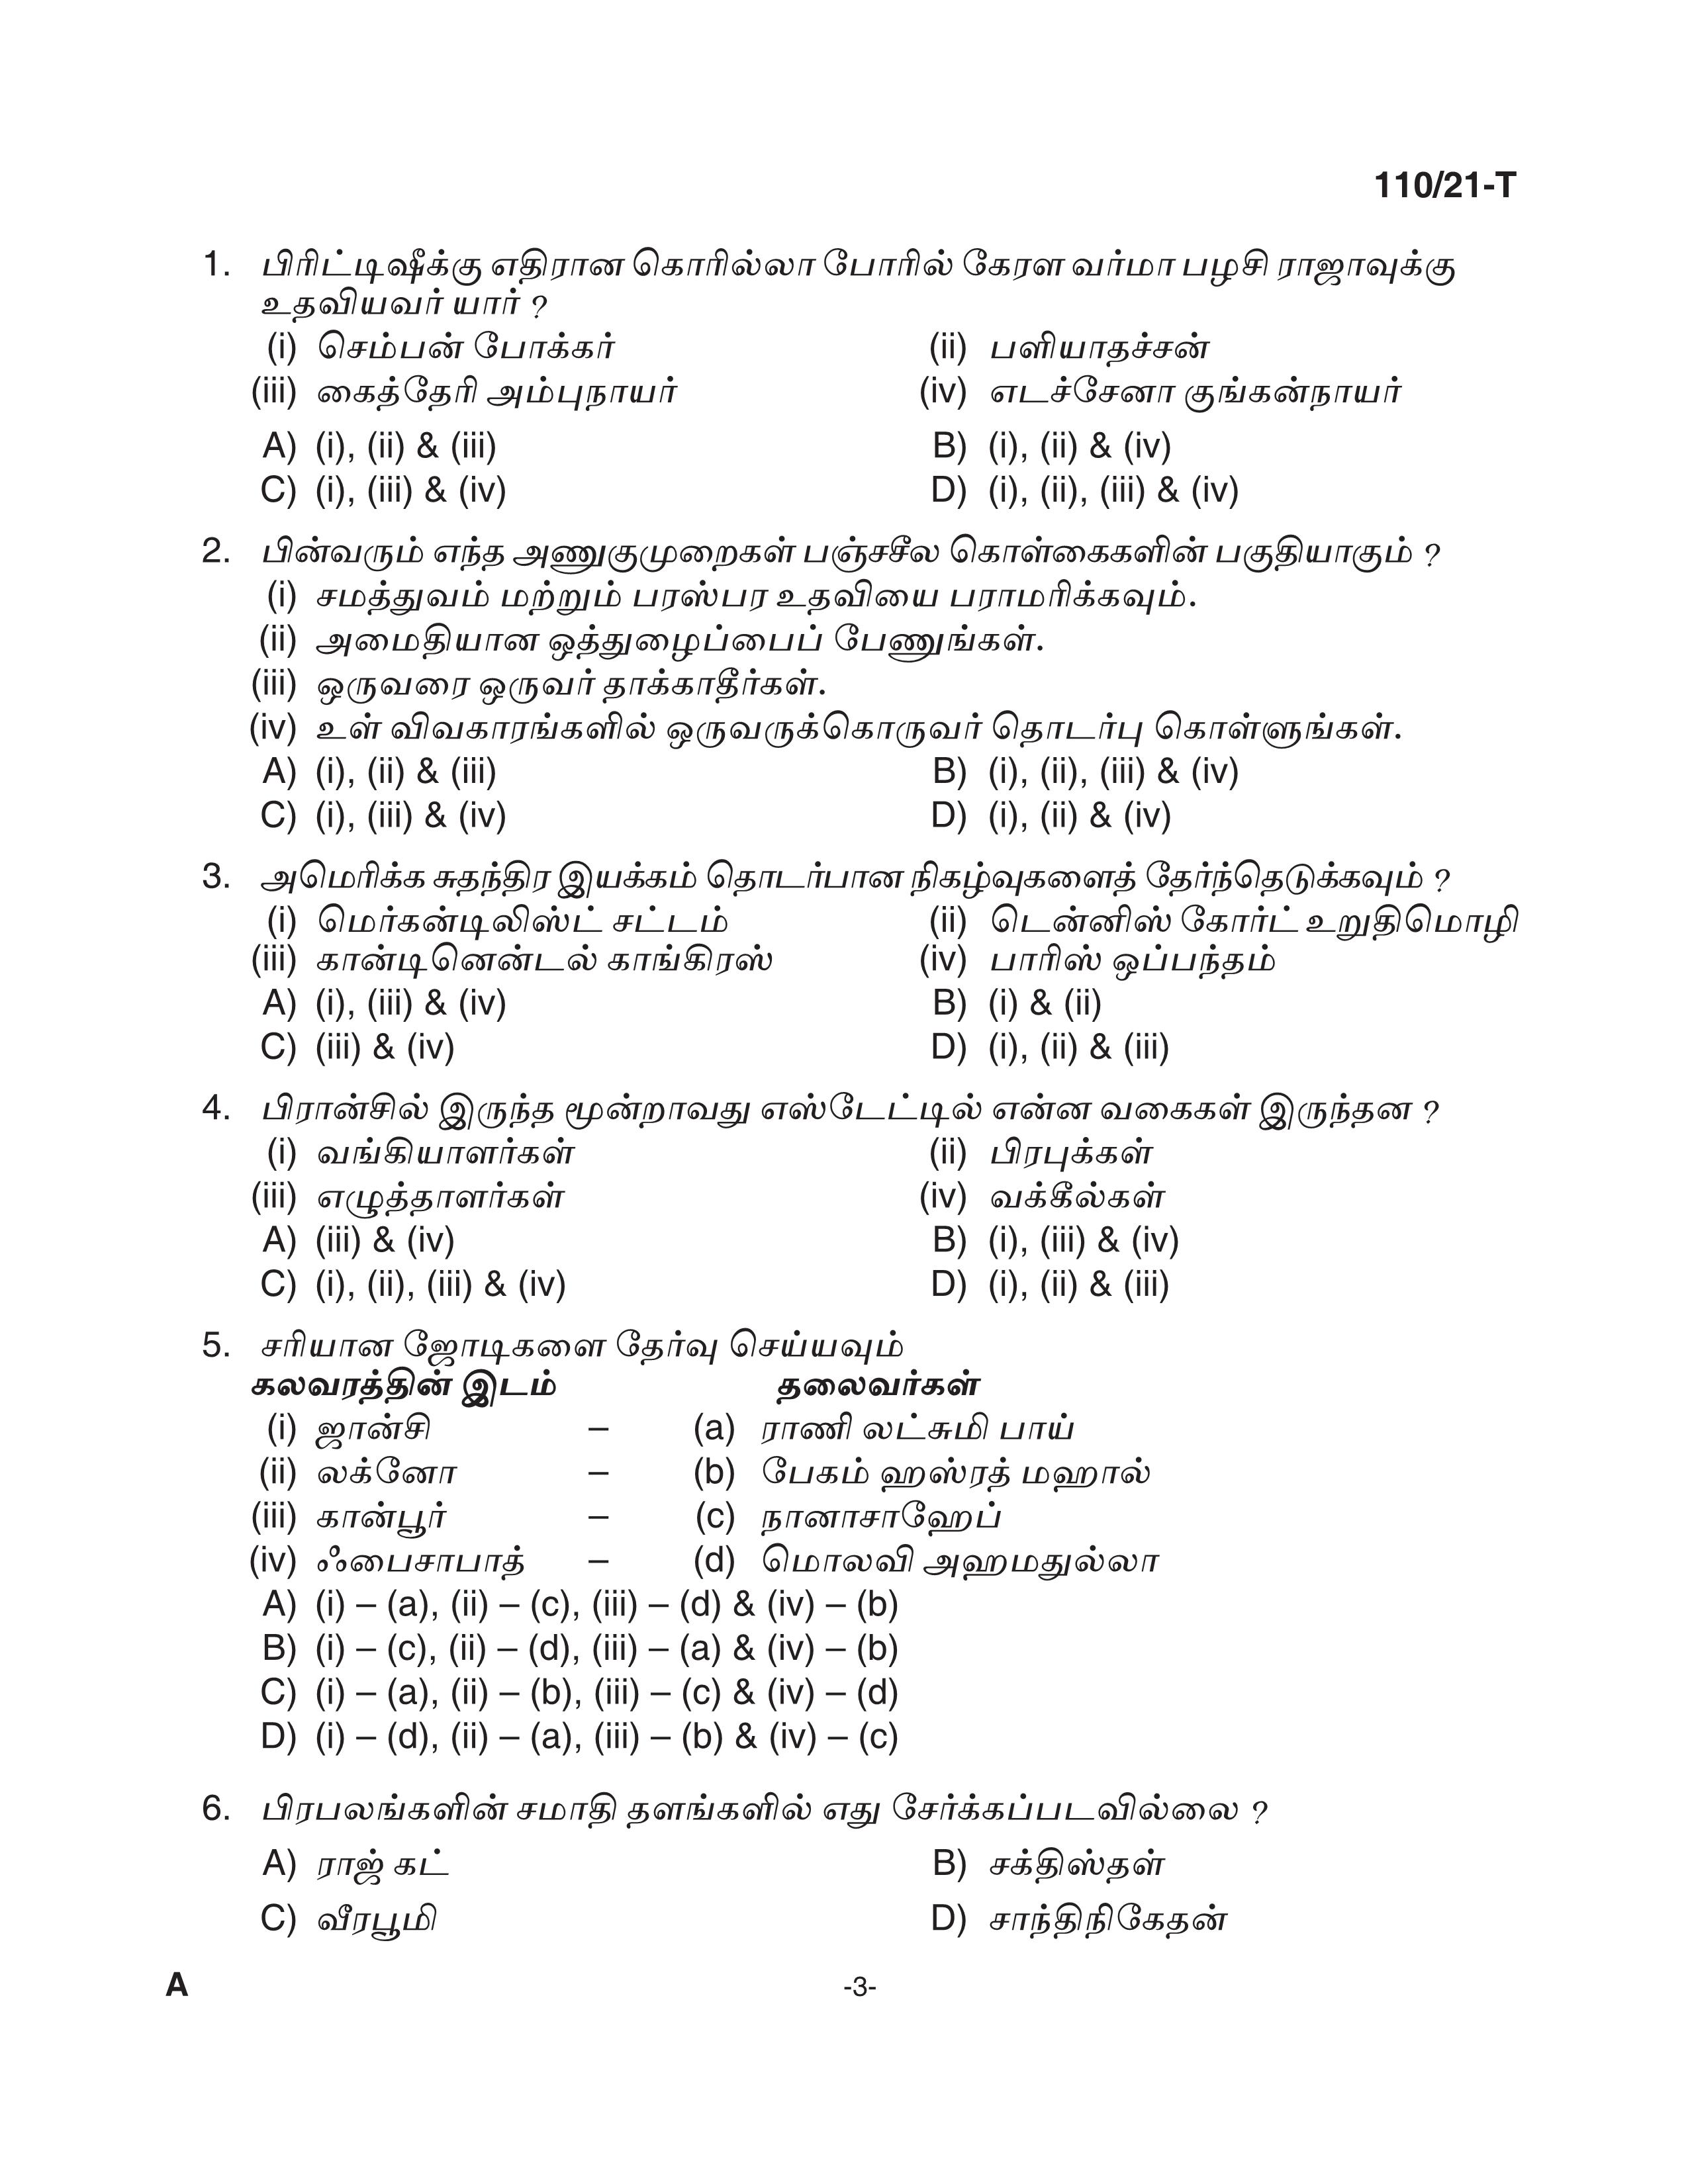 KPSC Assistant Grade II Sergeant Tamil Exam 2021 Code 1102021 T 2